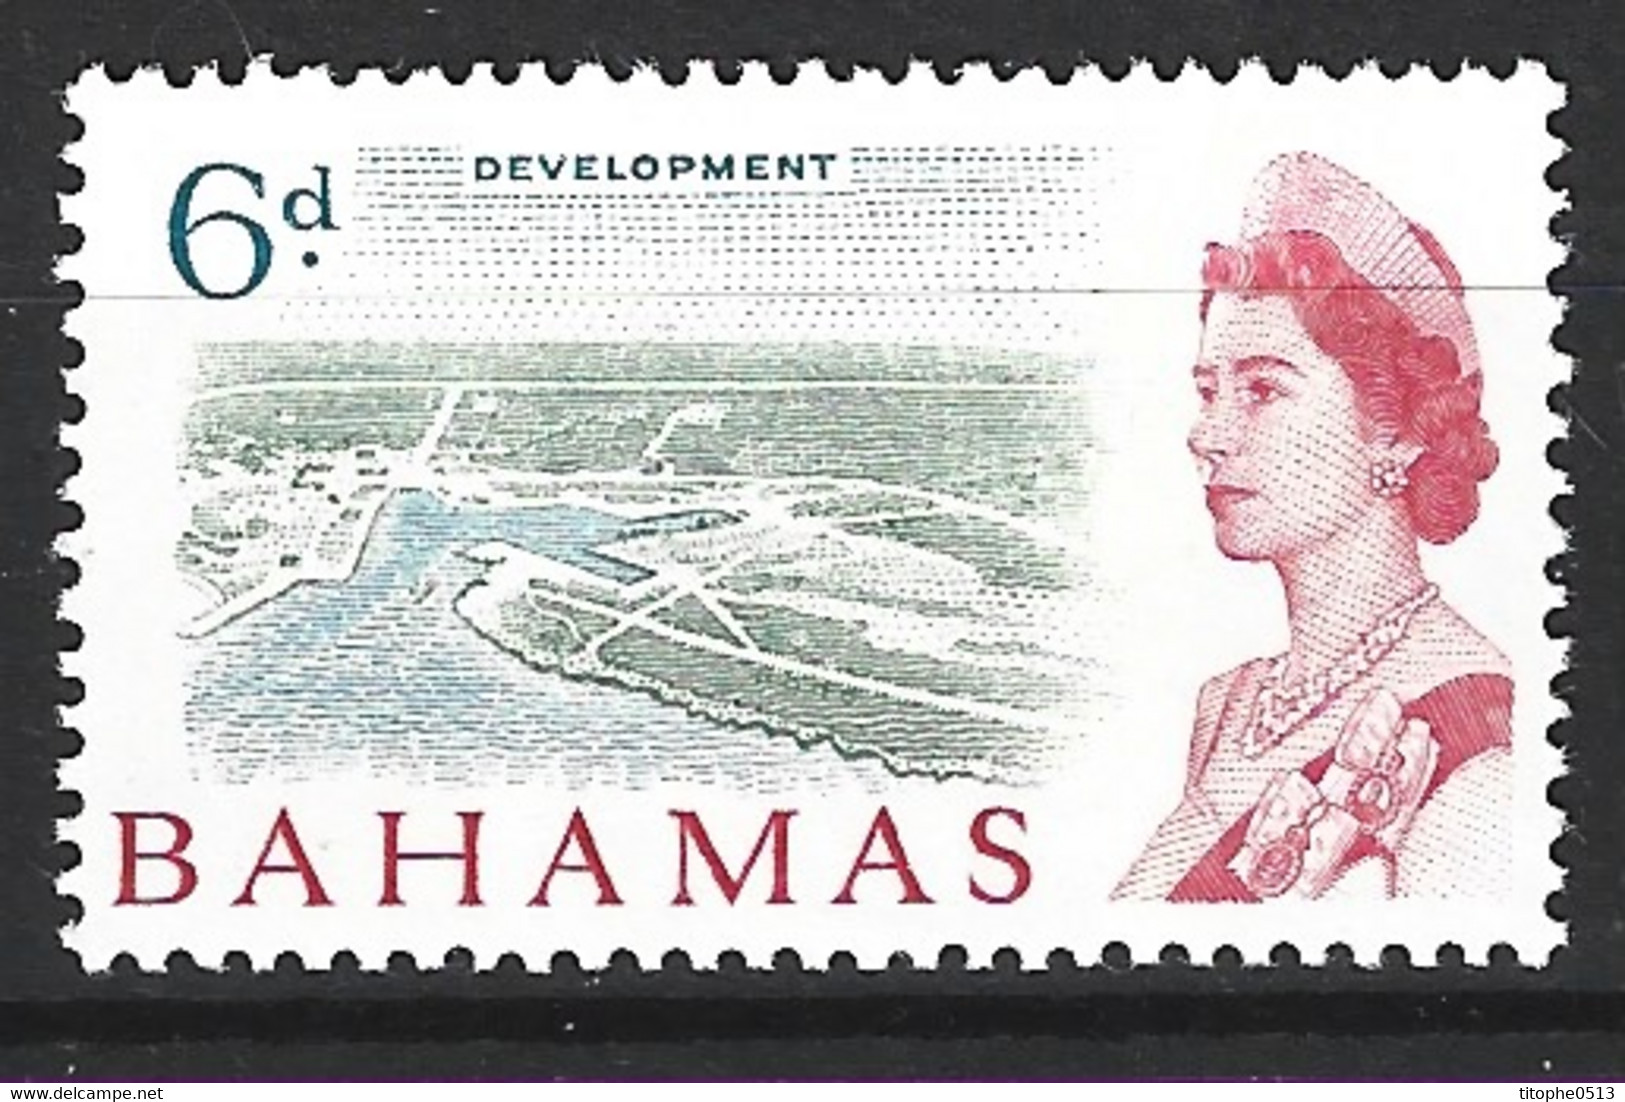 BAHAMAS. N°199 De 1965. Développement Des îles. - 1963-1973 Ministerial Government